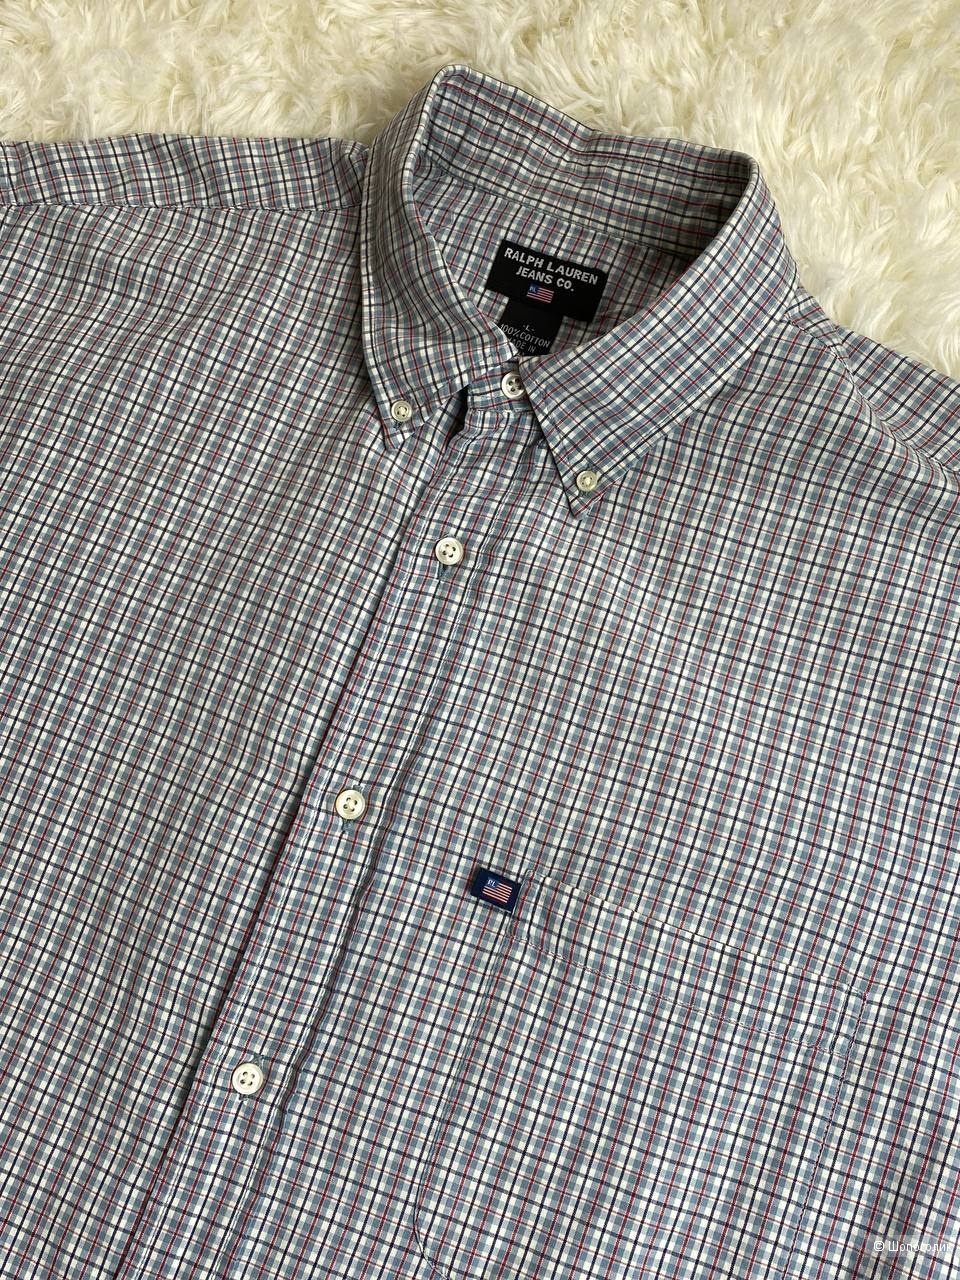 Рубашка Ralph Lauren Jeans Co., размер: L